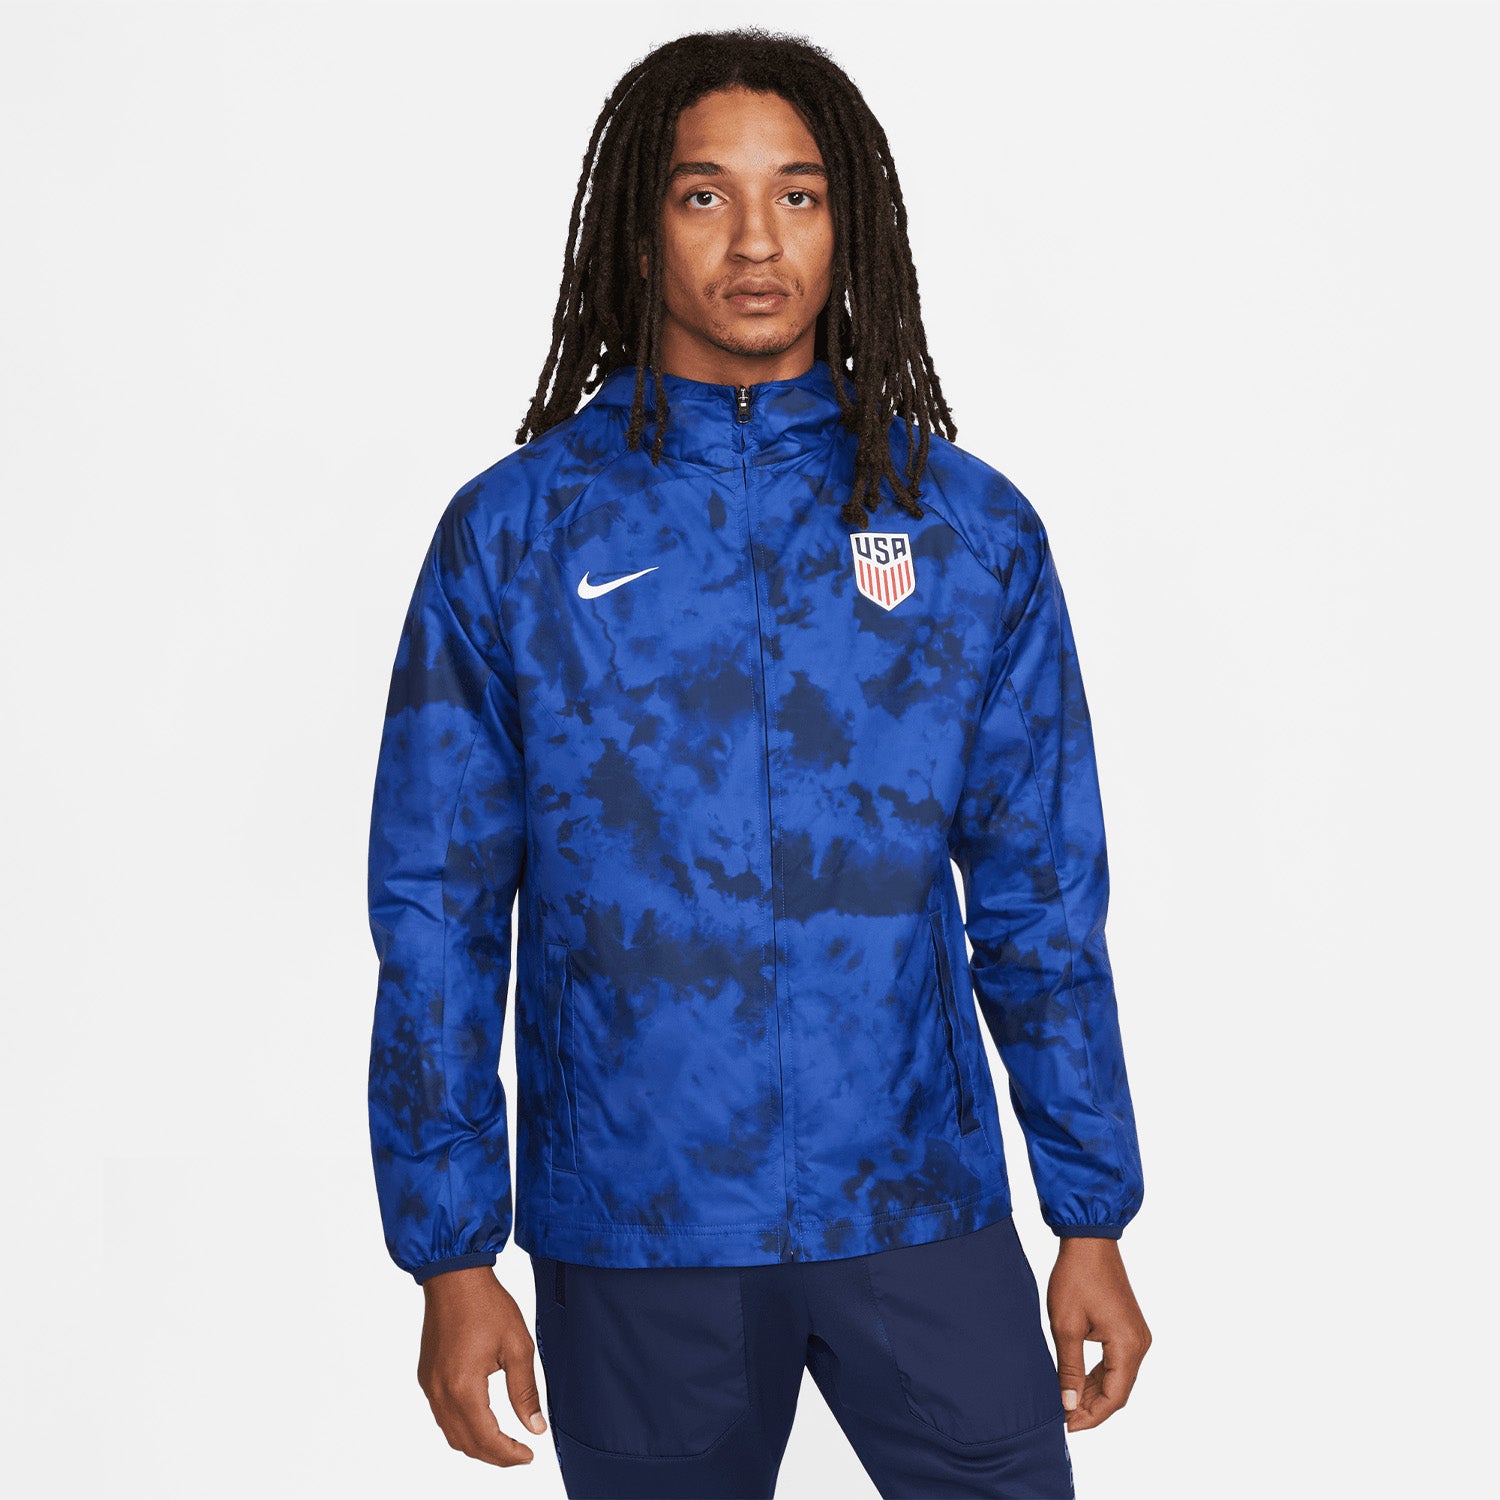 Men's Nike USA Full Zip Graphic Jacket